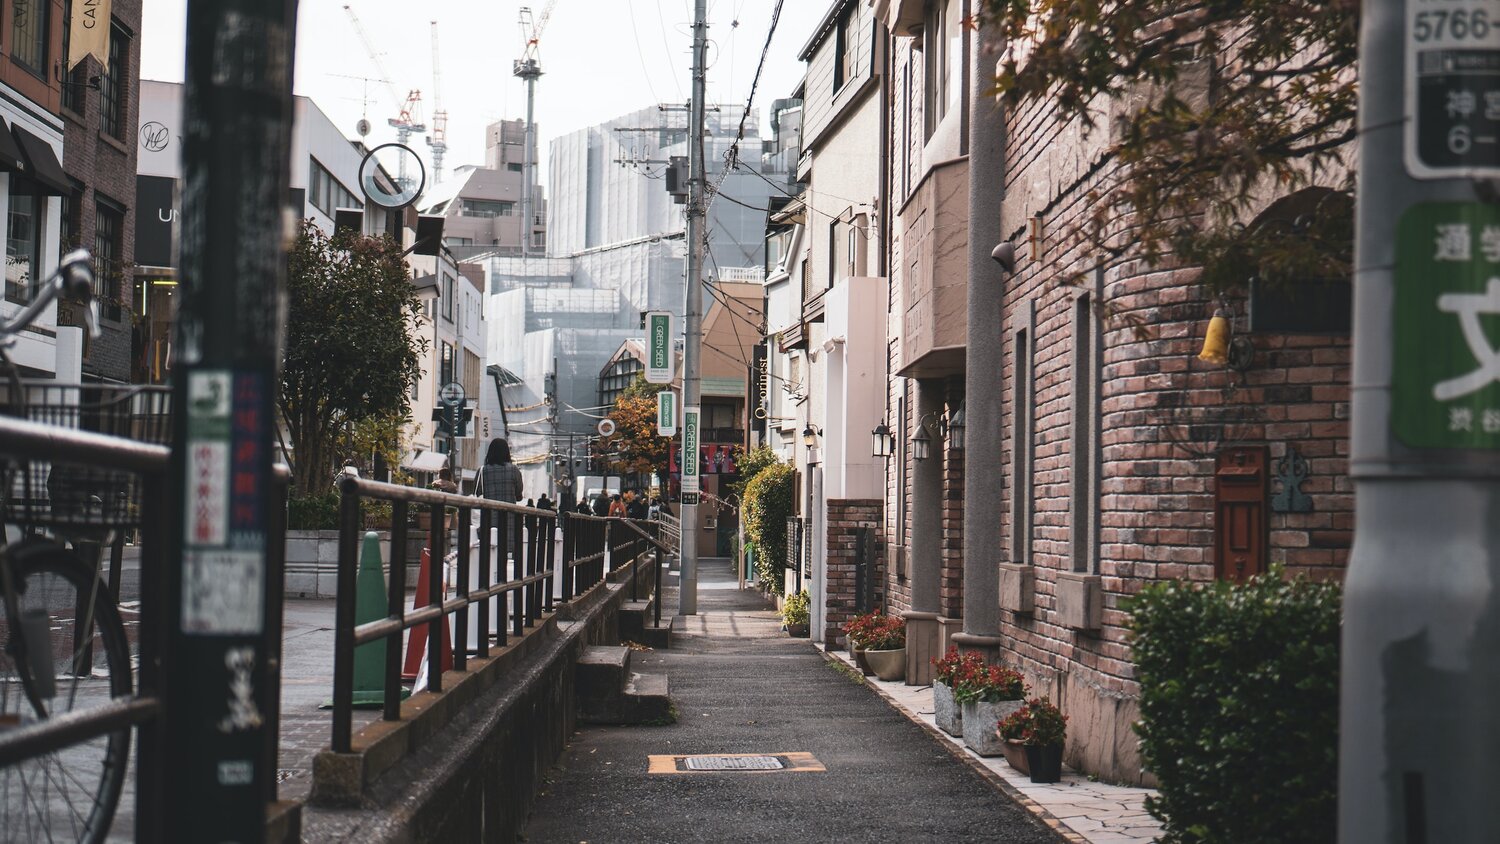 MOTOKYO-Tokyo Guide & Japanese lesson